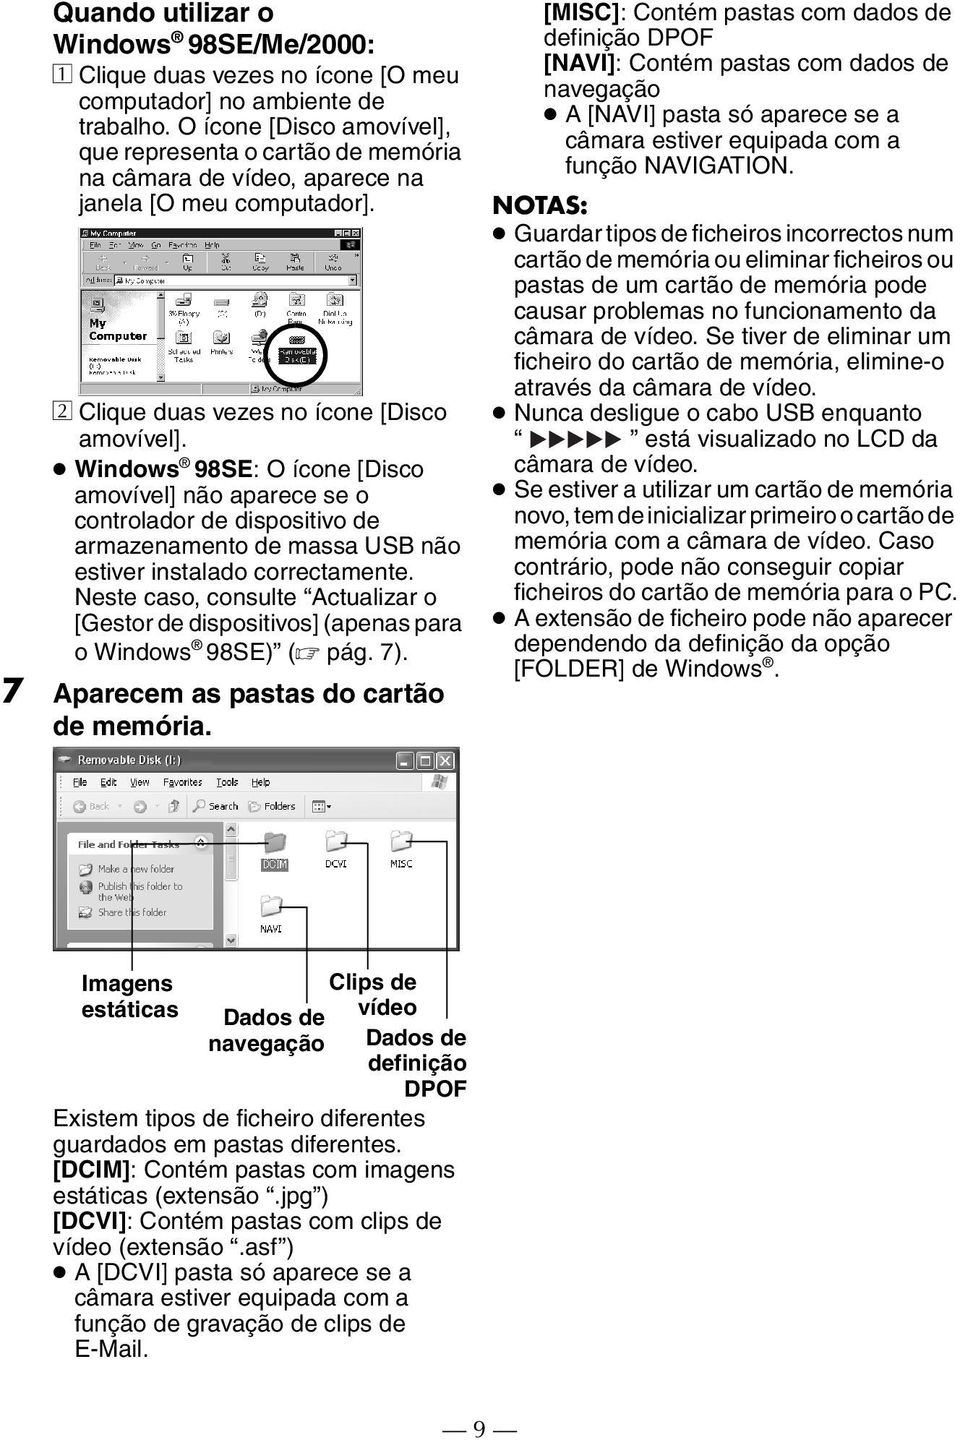 Windows 98SE: O ícone [Disco amovível] não aparece se o controlador de dispositivo de armazenamento de massa USB não estiver instalado correctamente.